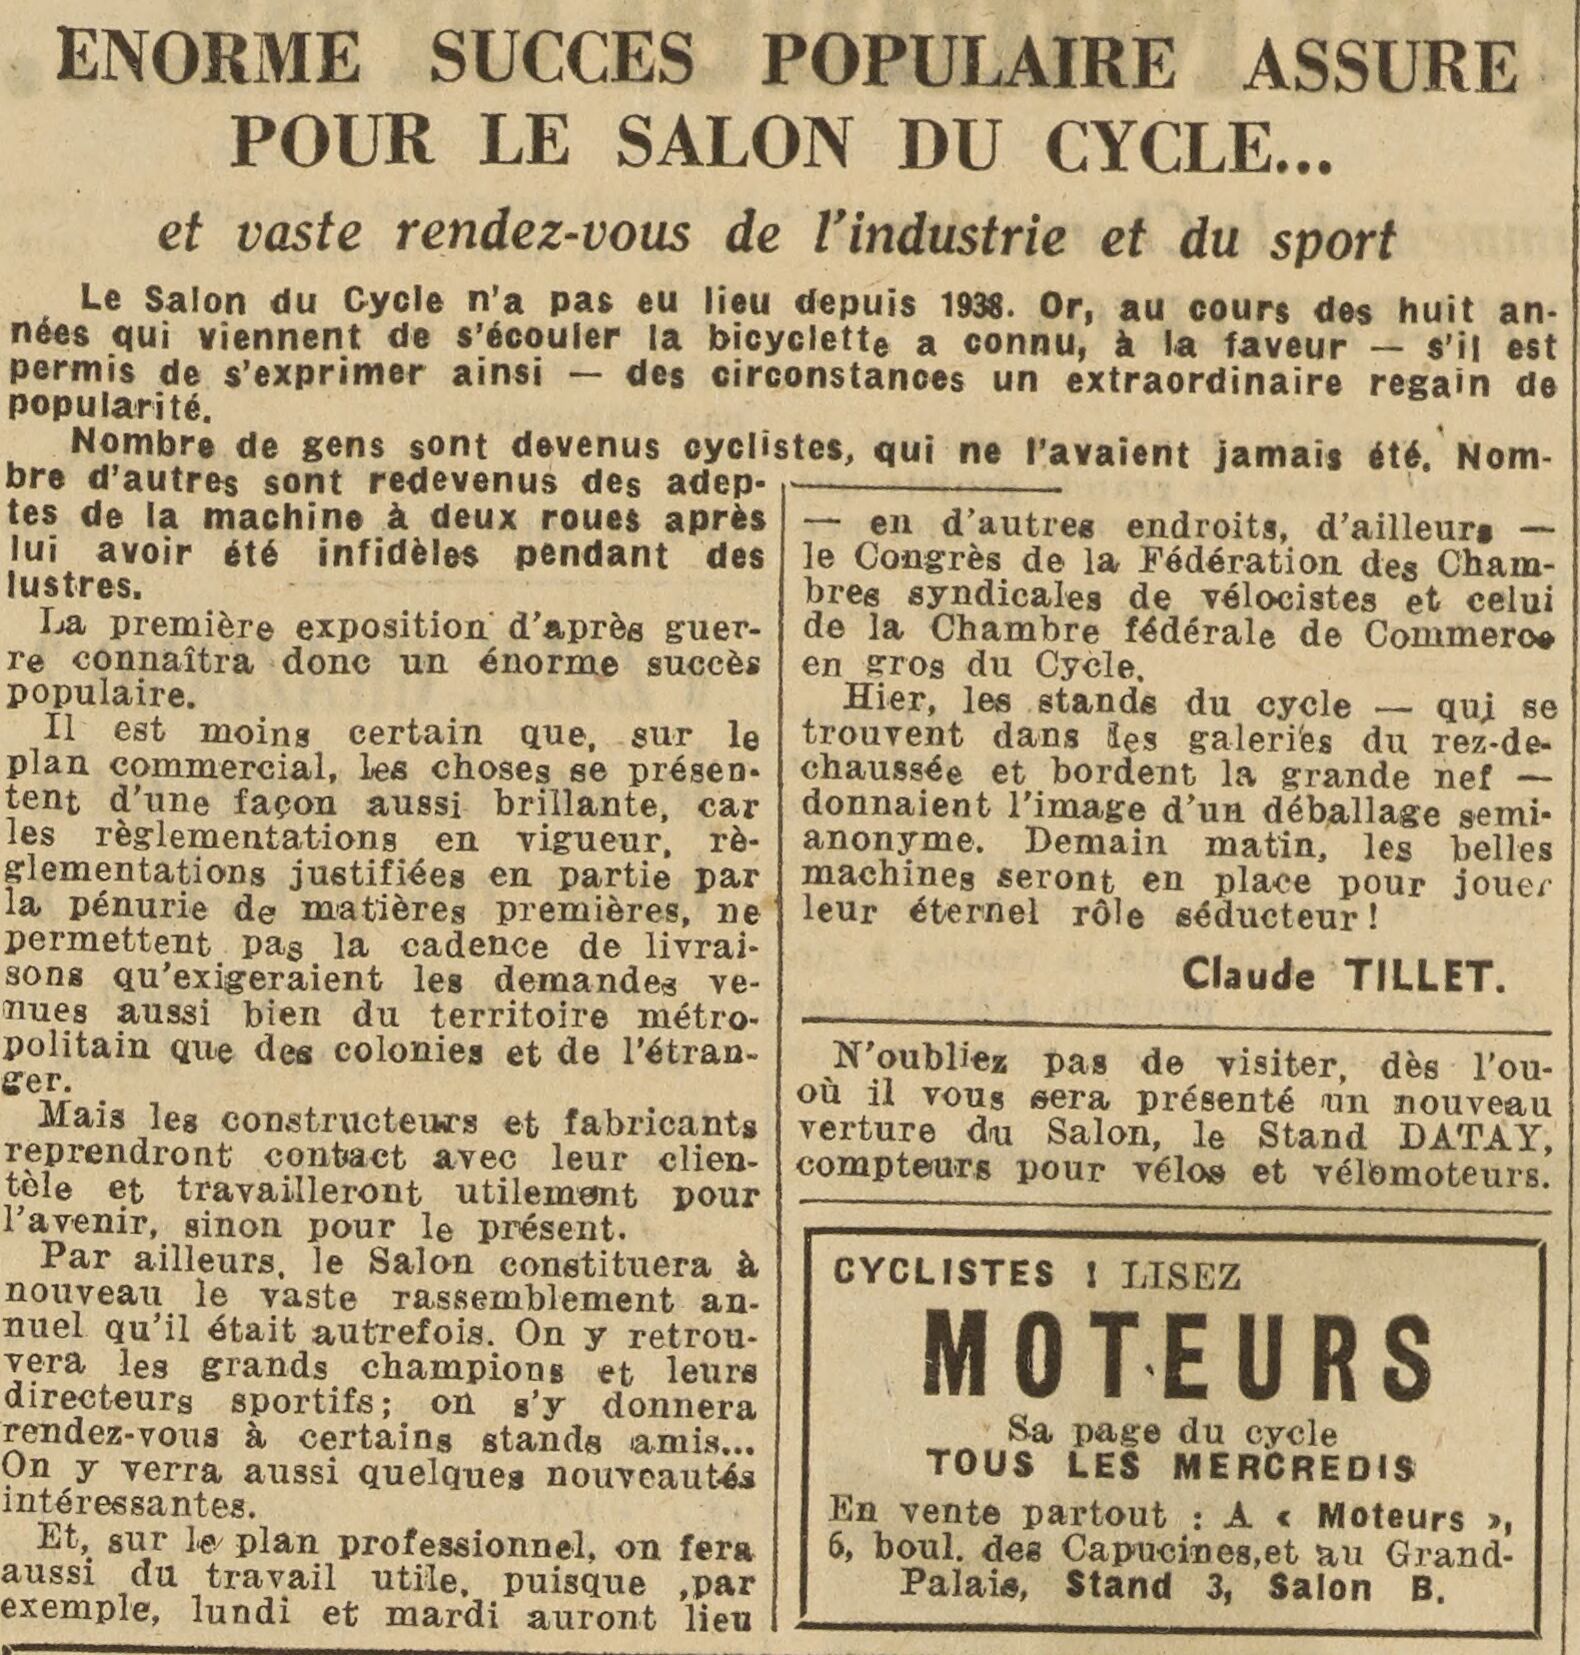 Salon du Cycle octobre 1946, Paris, le Grand Palais - L'Equipe - Cyclo Magazine 230214050432721918111987